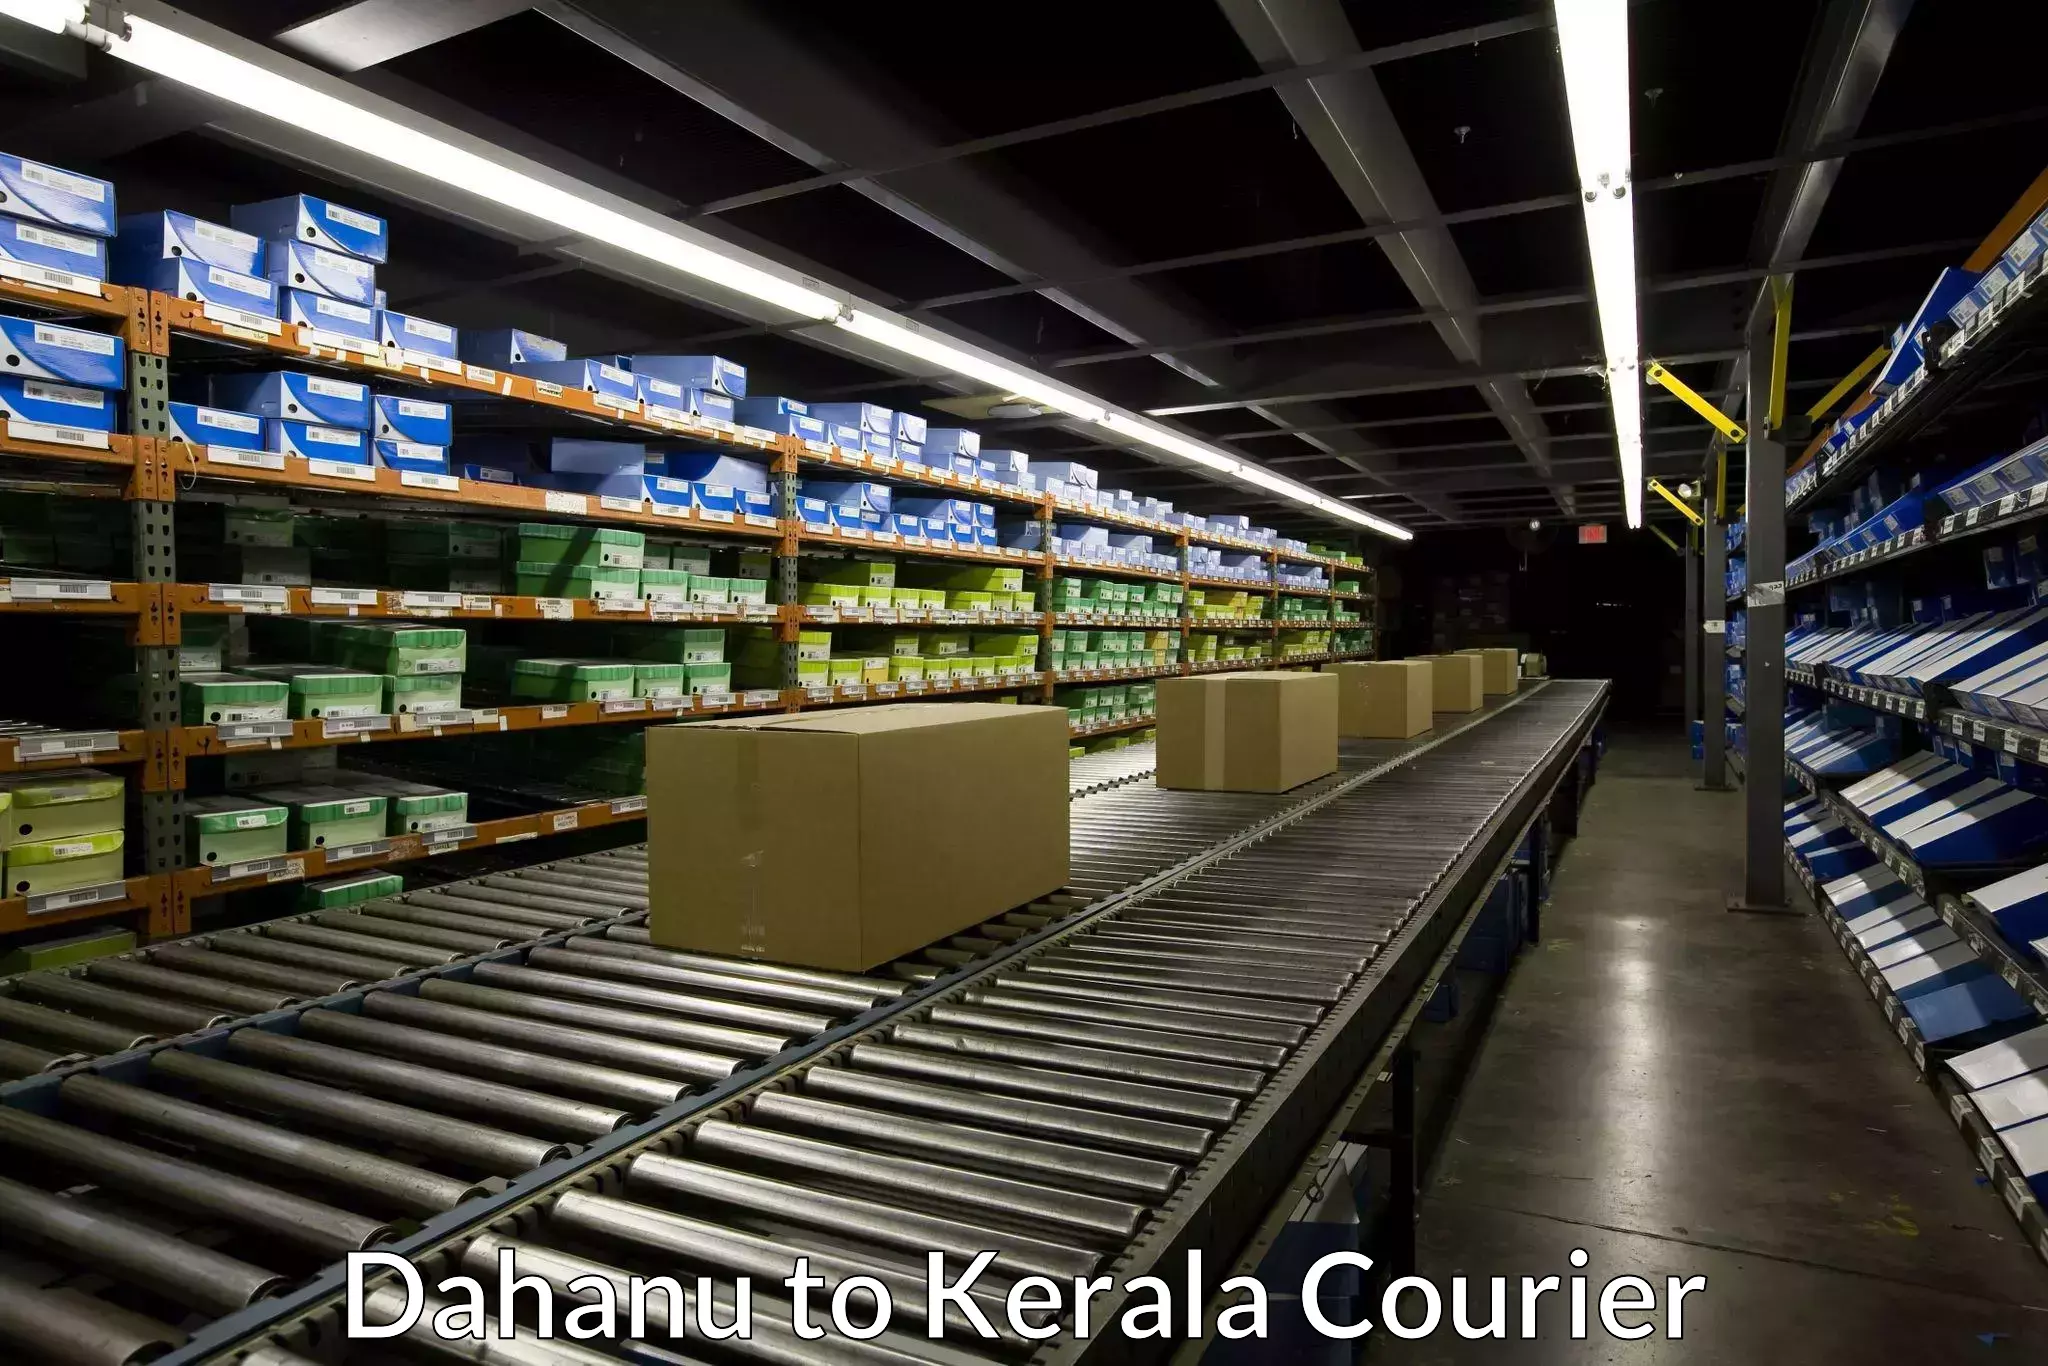 Express courier facilities Dahanu to Cochin Port Kochi